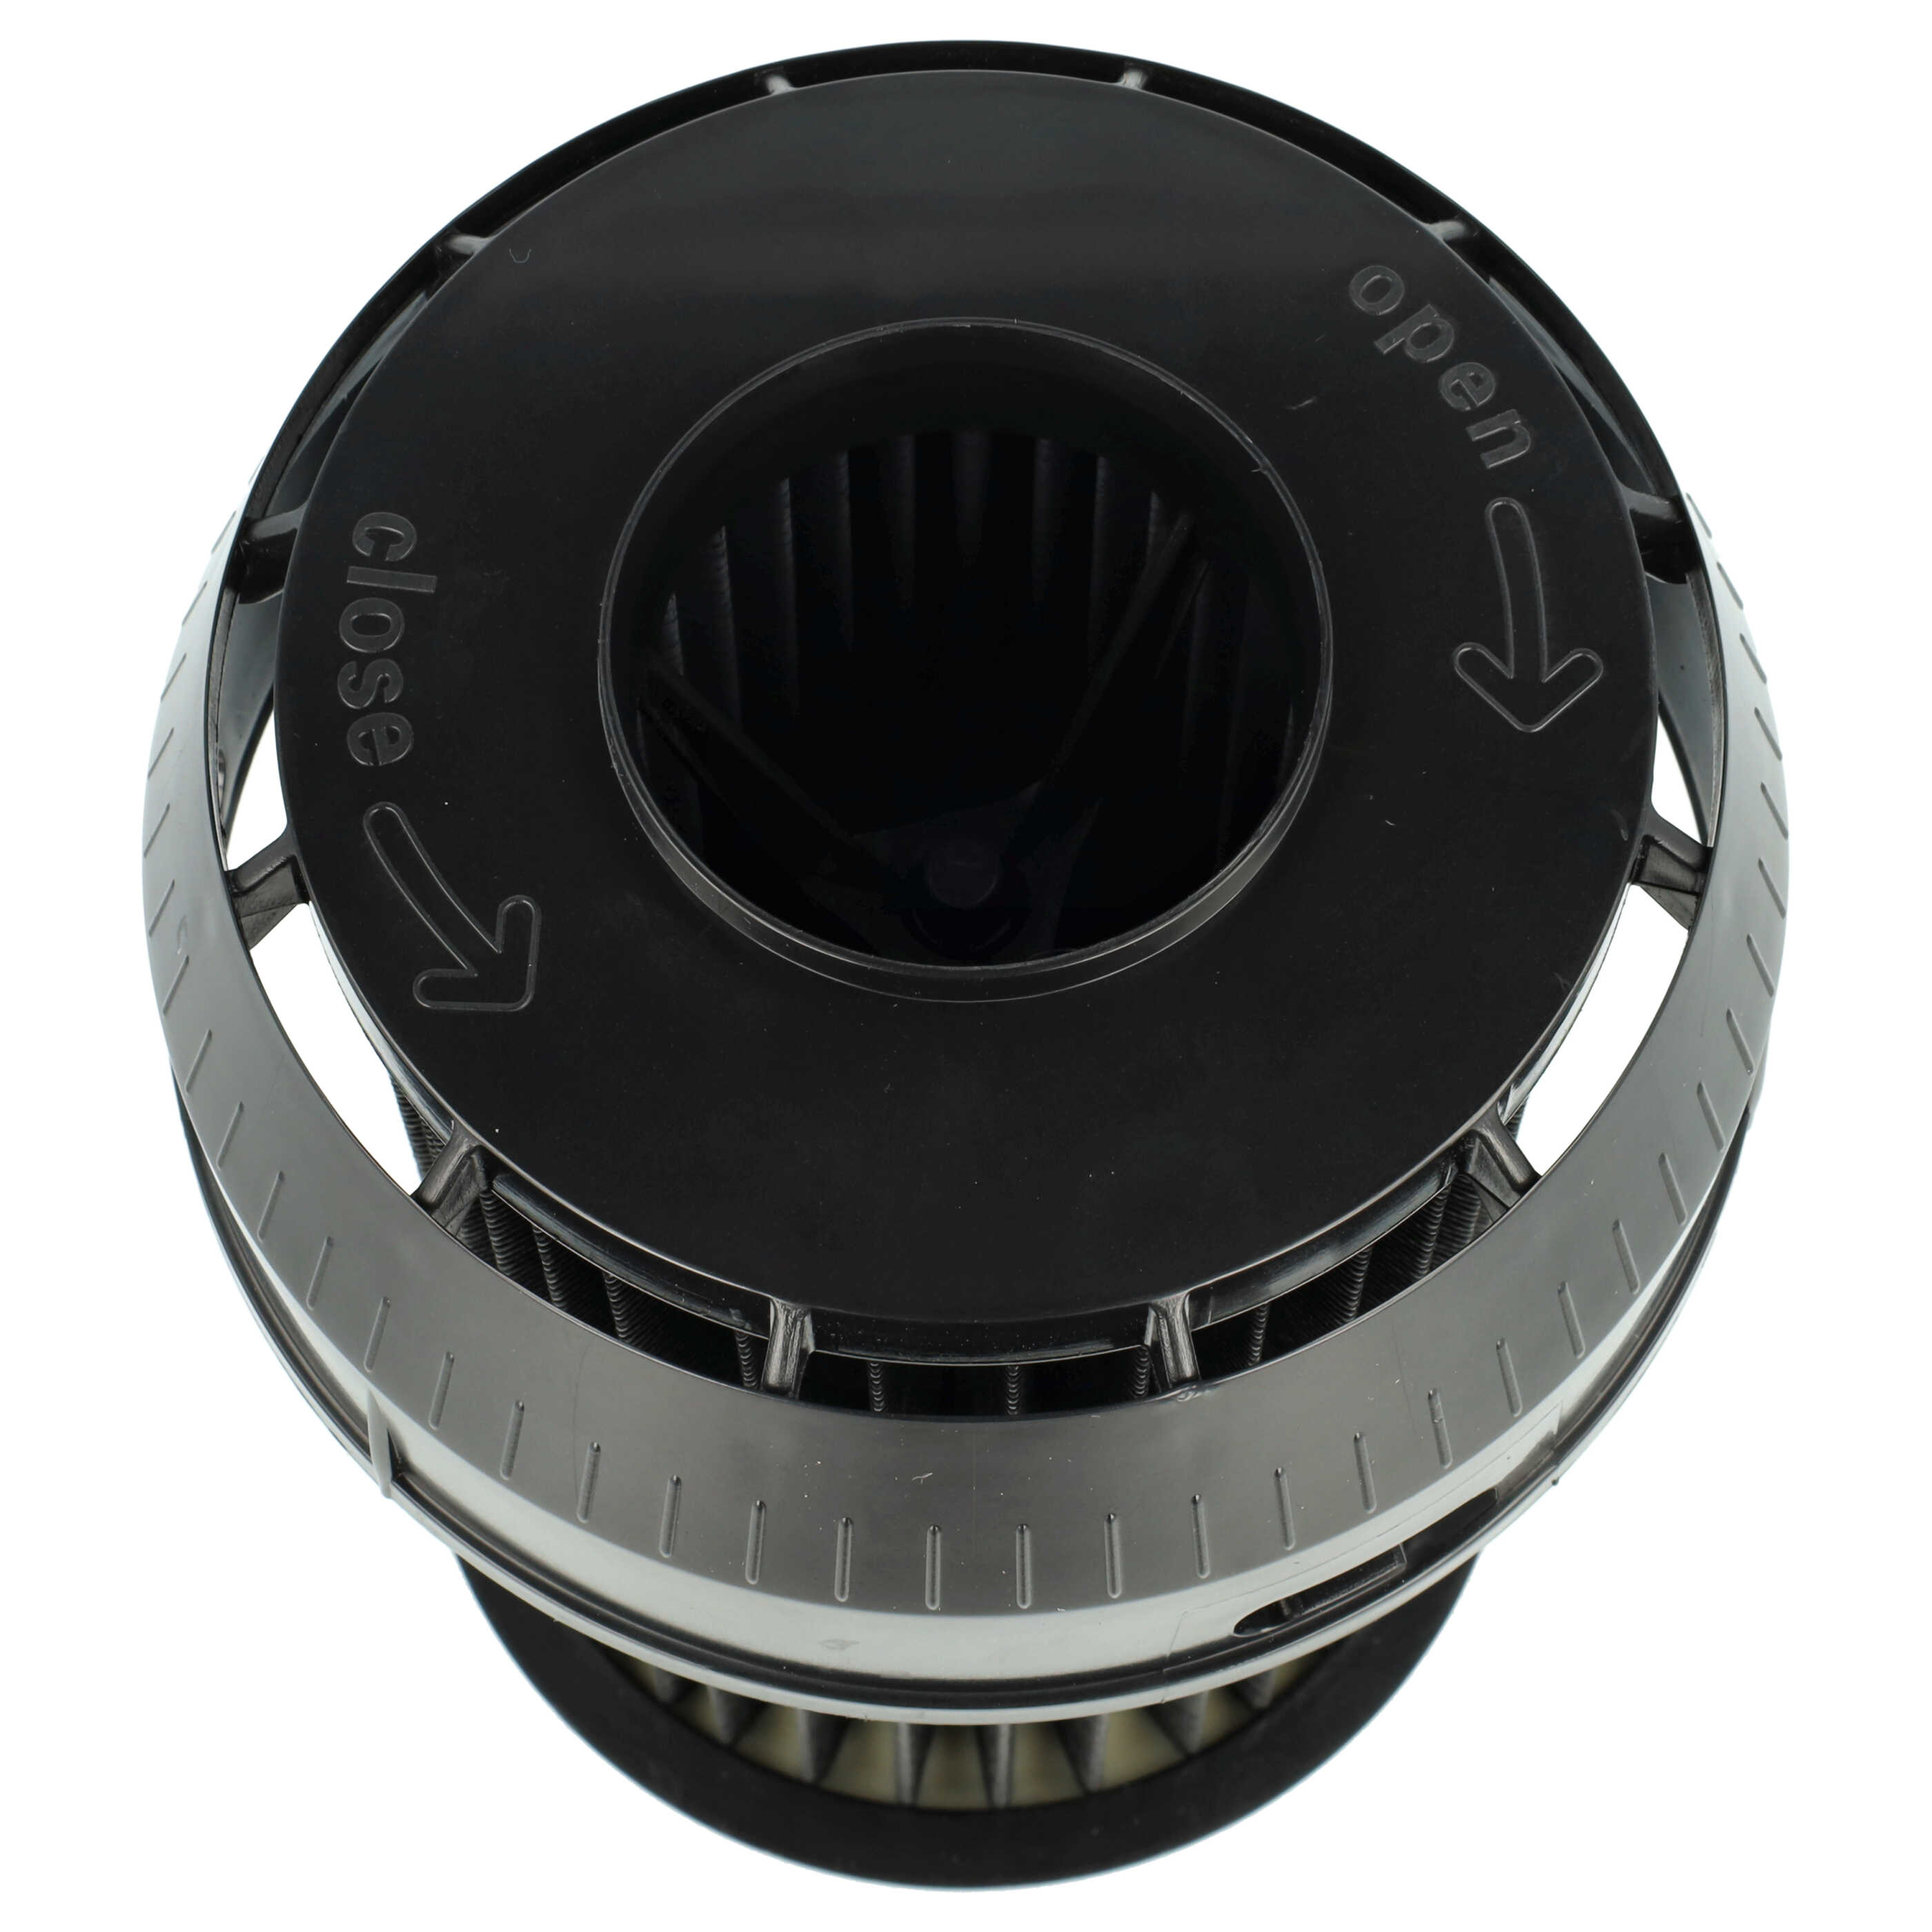 Filtro reemplaza Bosch 2609256d46, 00649841 para aspiradora - filtro laminar, negro